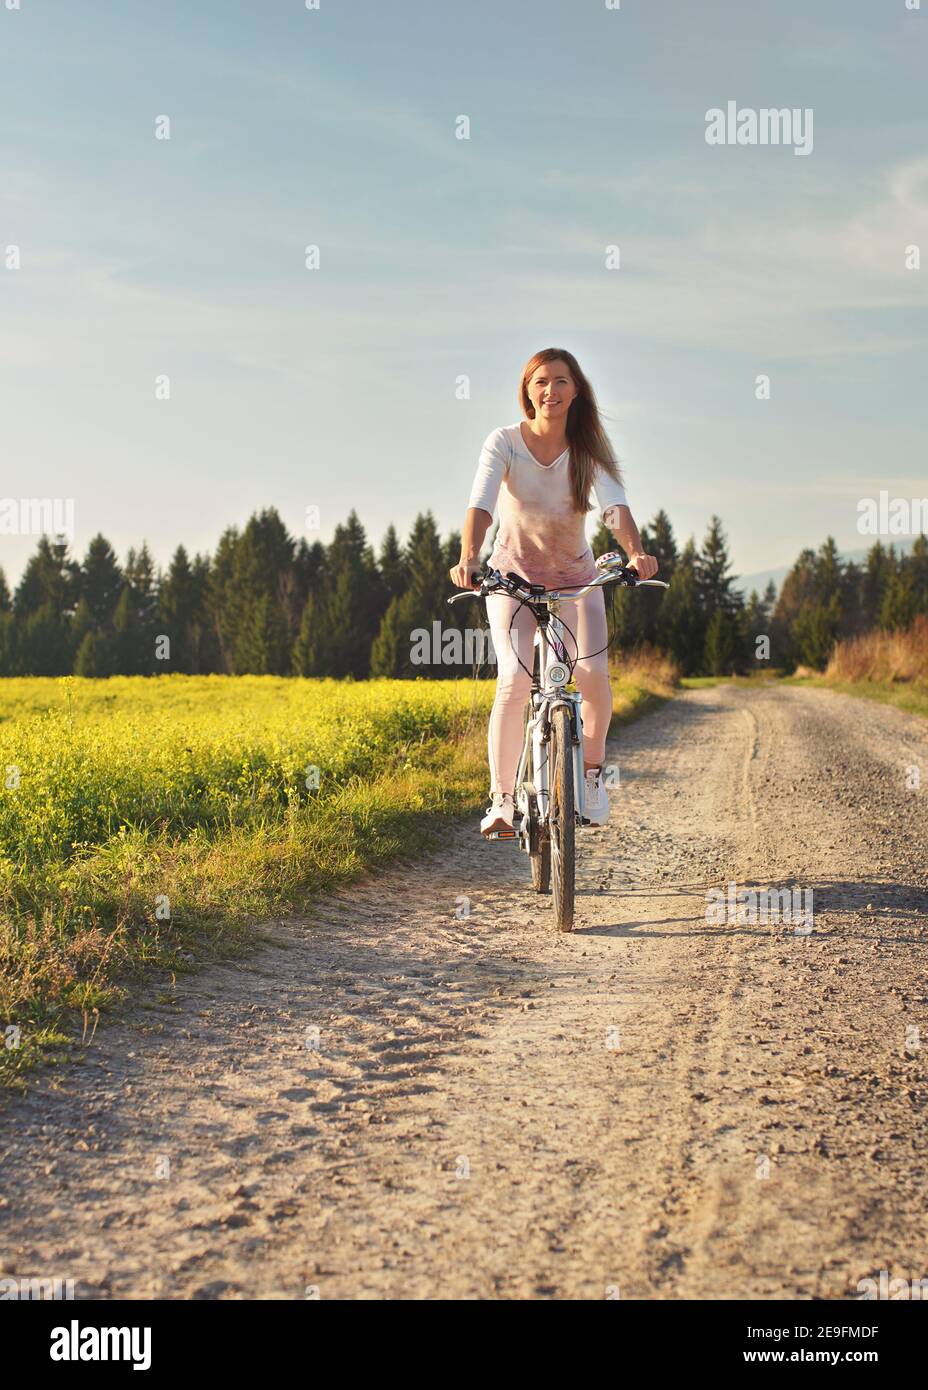 Junge Frau fährt Fahrrad auf staubigen Straße in Richtung Kamera, Nachmittag Sonne scheint auf Felder und Wald im Hintergrund Stockfoto